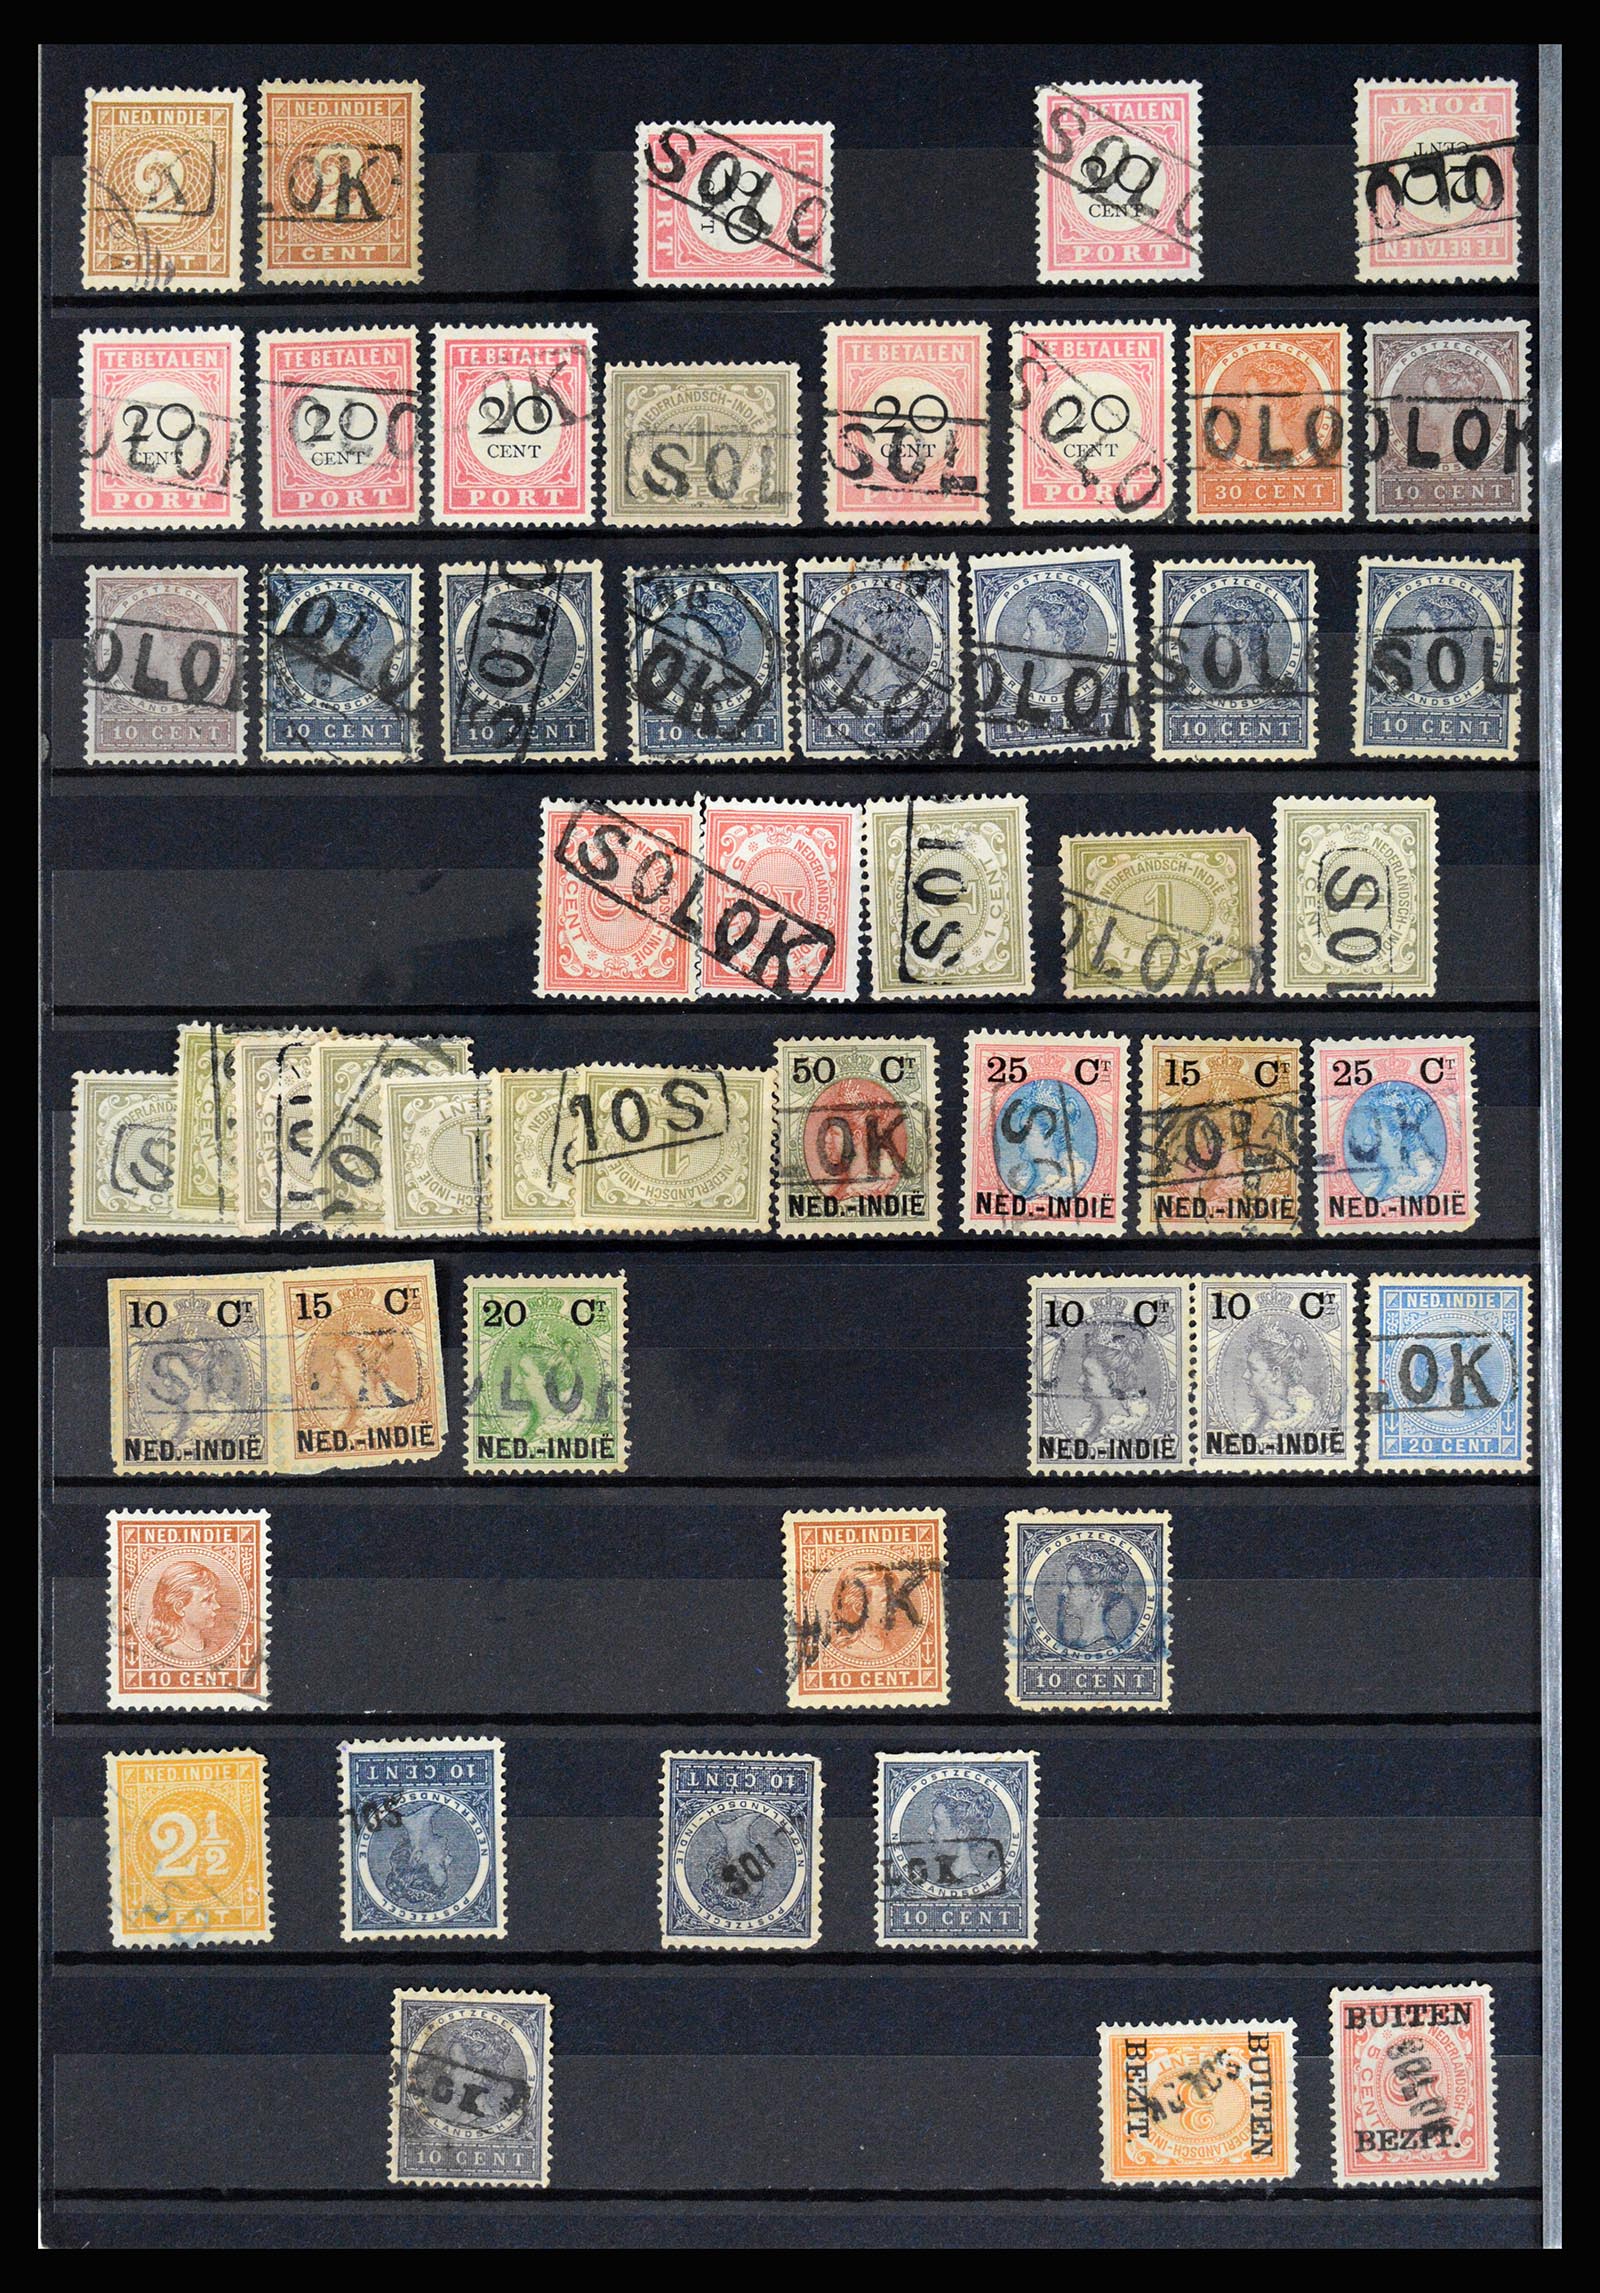 36512 066 - Stamp collection 36512 Nederlands Indië stempels 1872-1930.